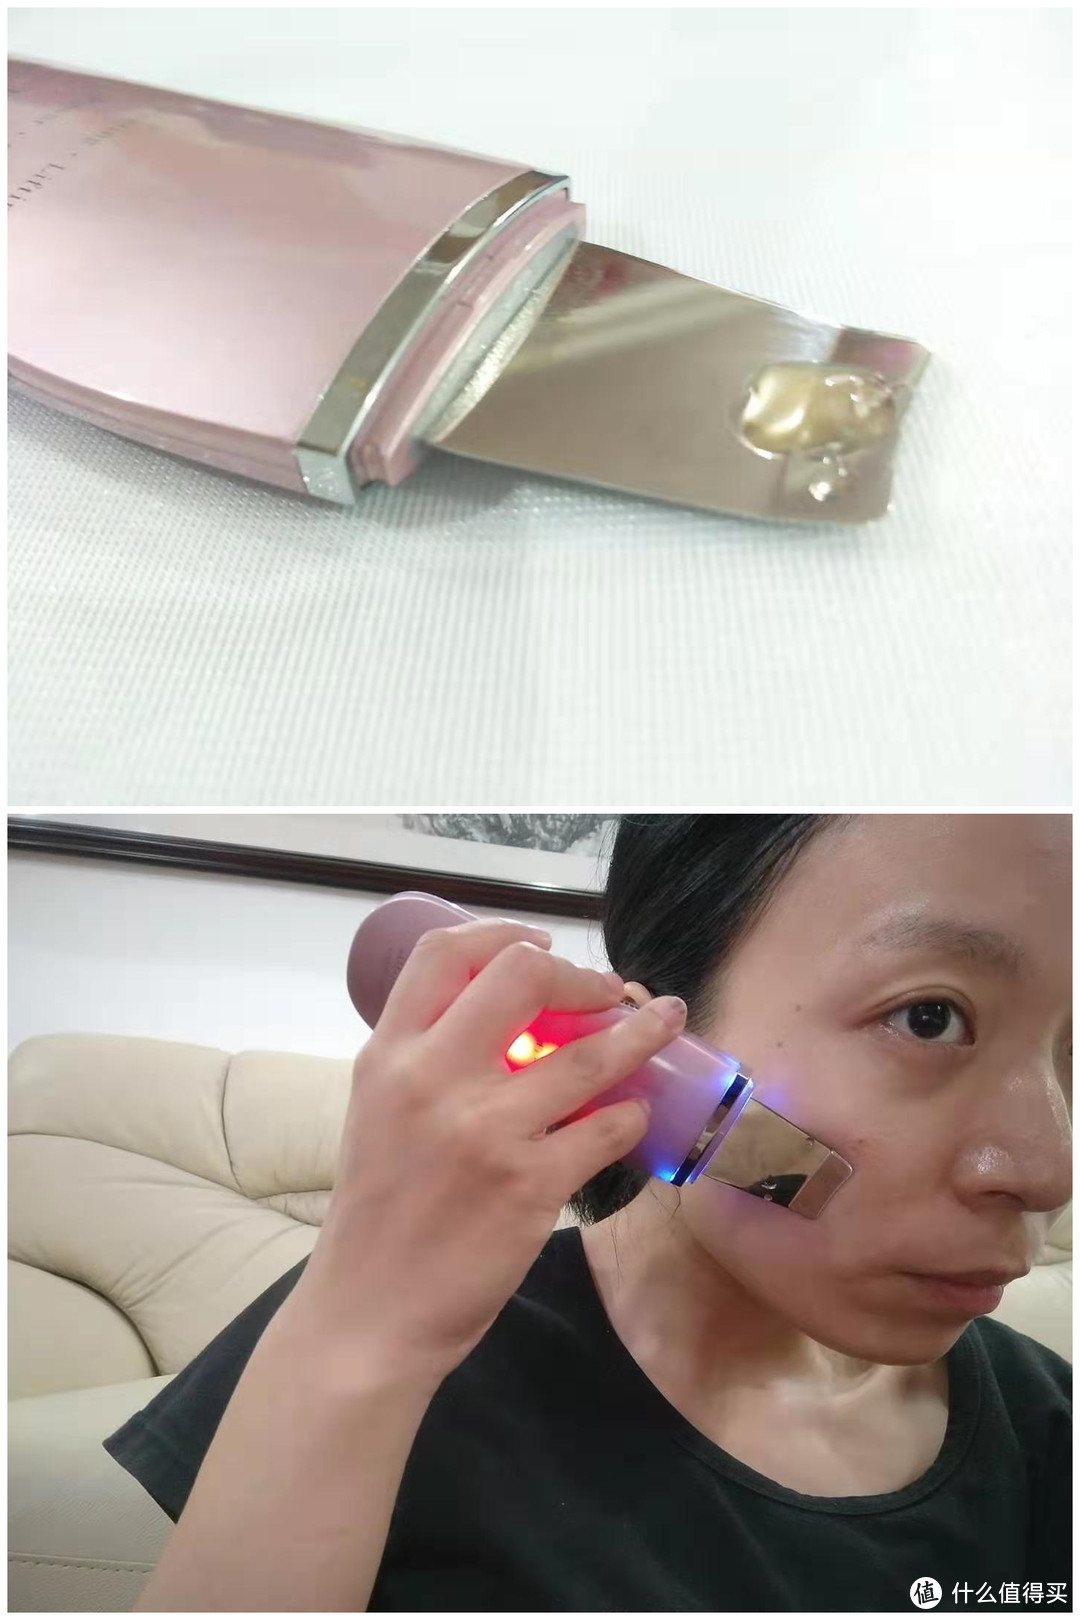 日本原装进口belulu  Aquarufa超声波技术无痛无伤害铲黑头粉刺、美容护肤家用仪器